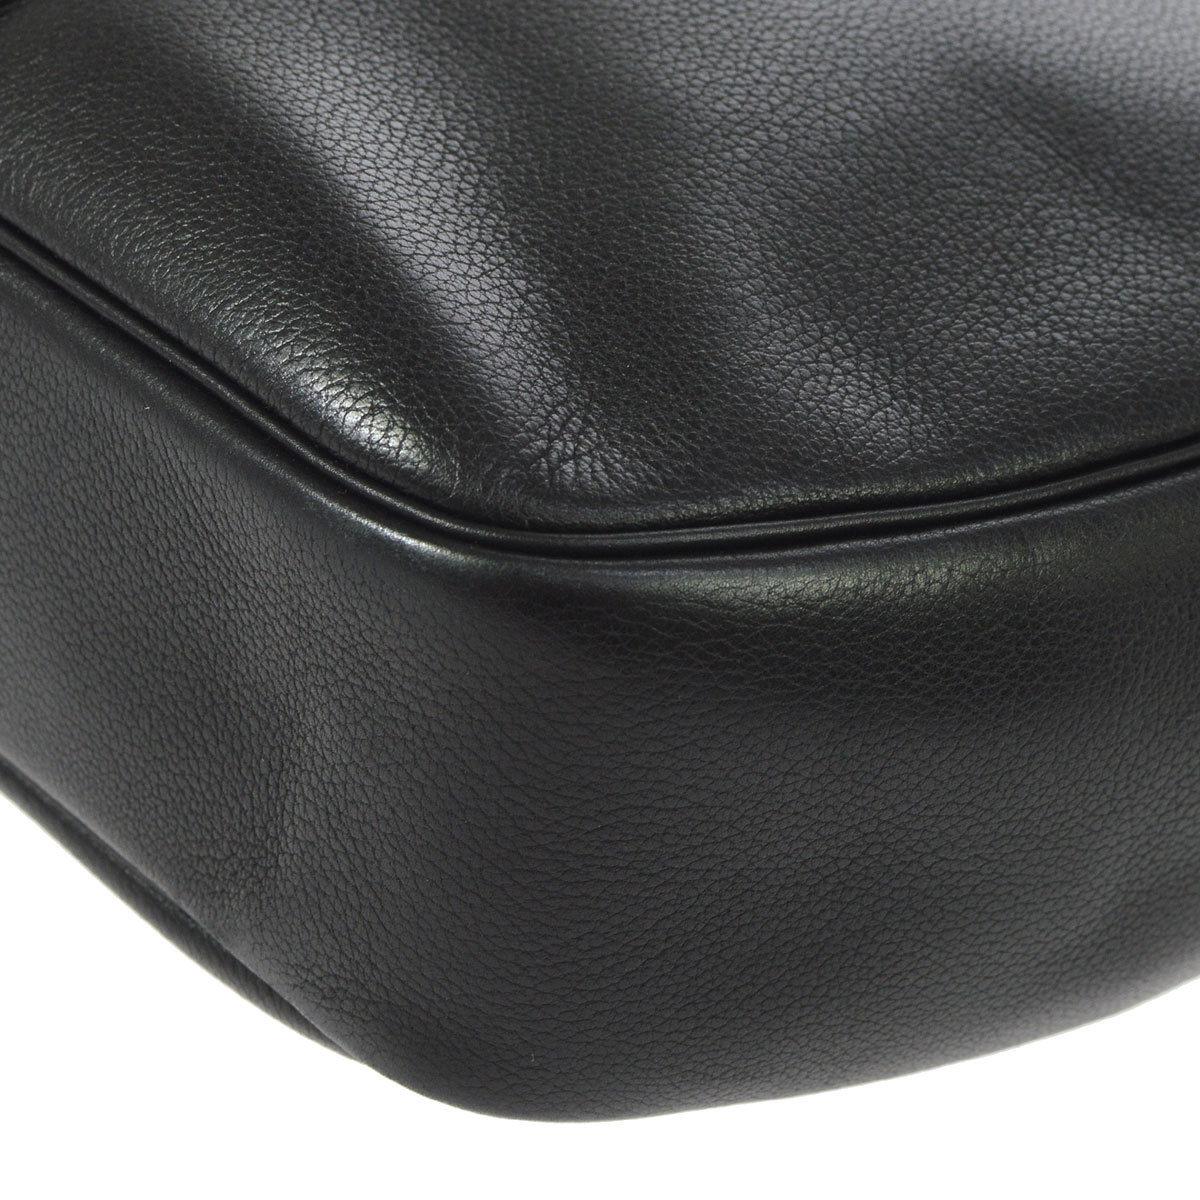 Hermes Black Leather Large Oblong Hobo Top Handle Carryall Shoulder Bag 1